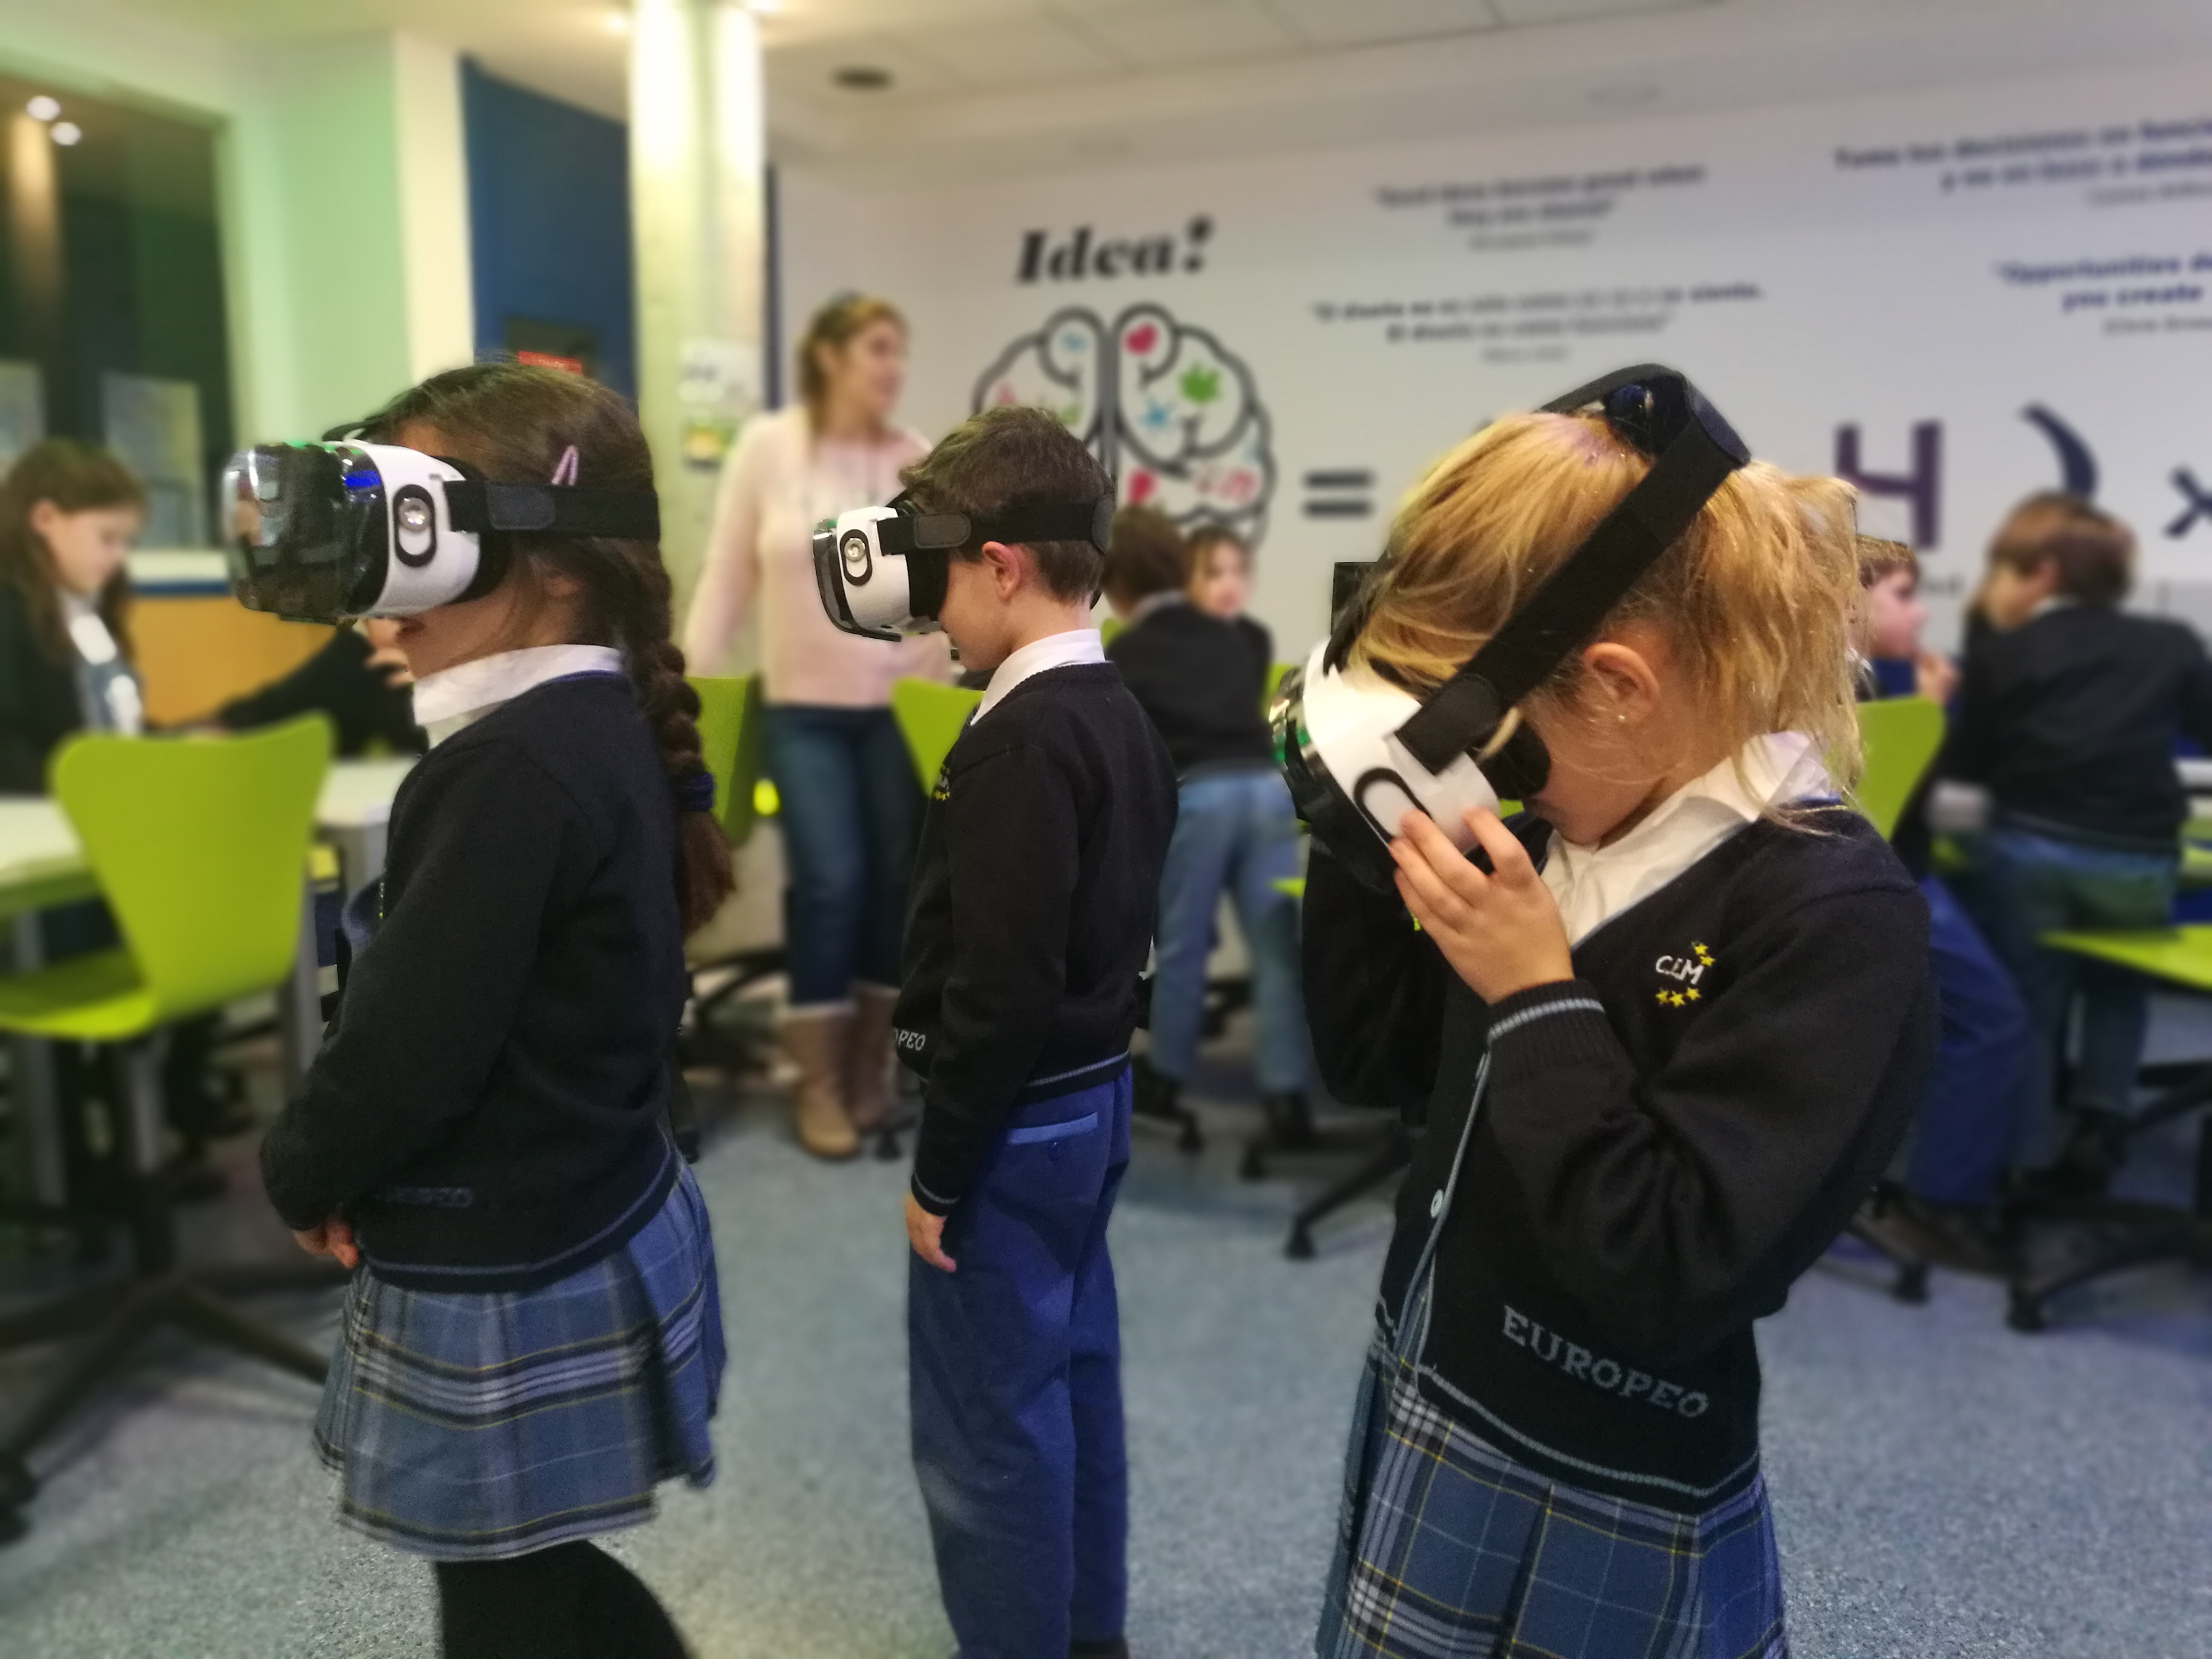 La Realidad Virtual cambia el futuro de la Educación - Revista Colegio